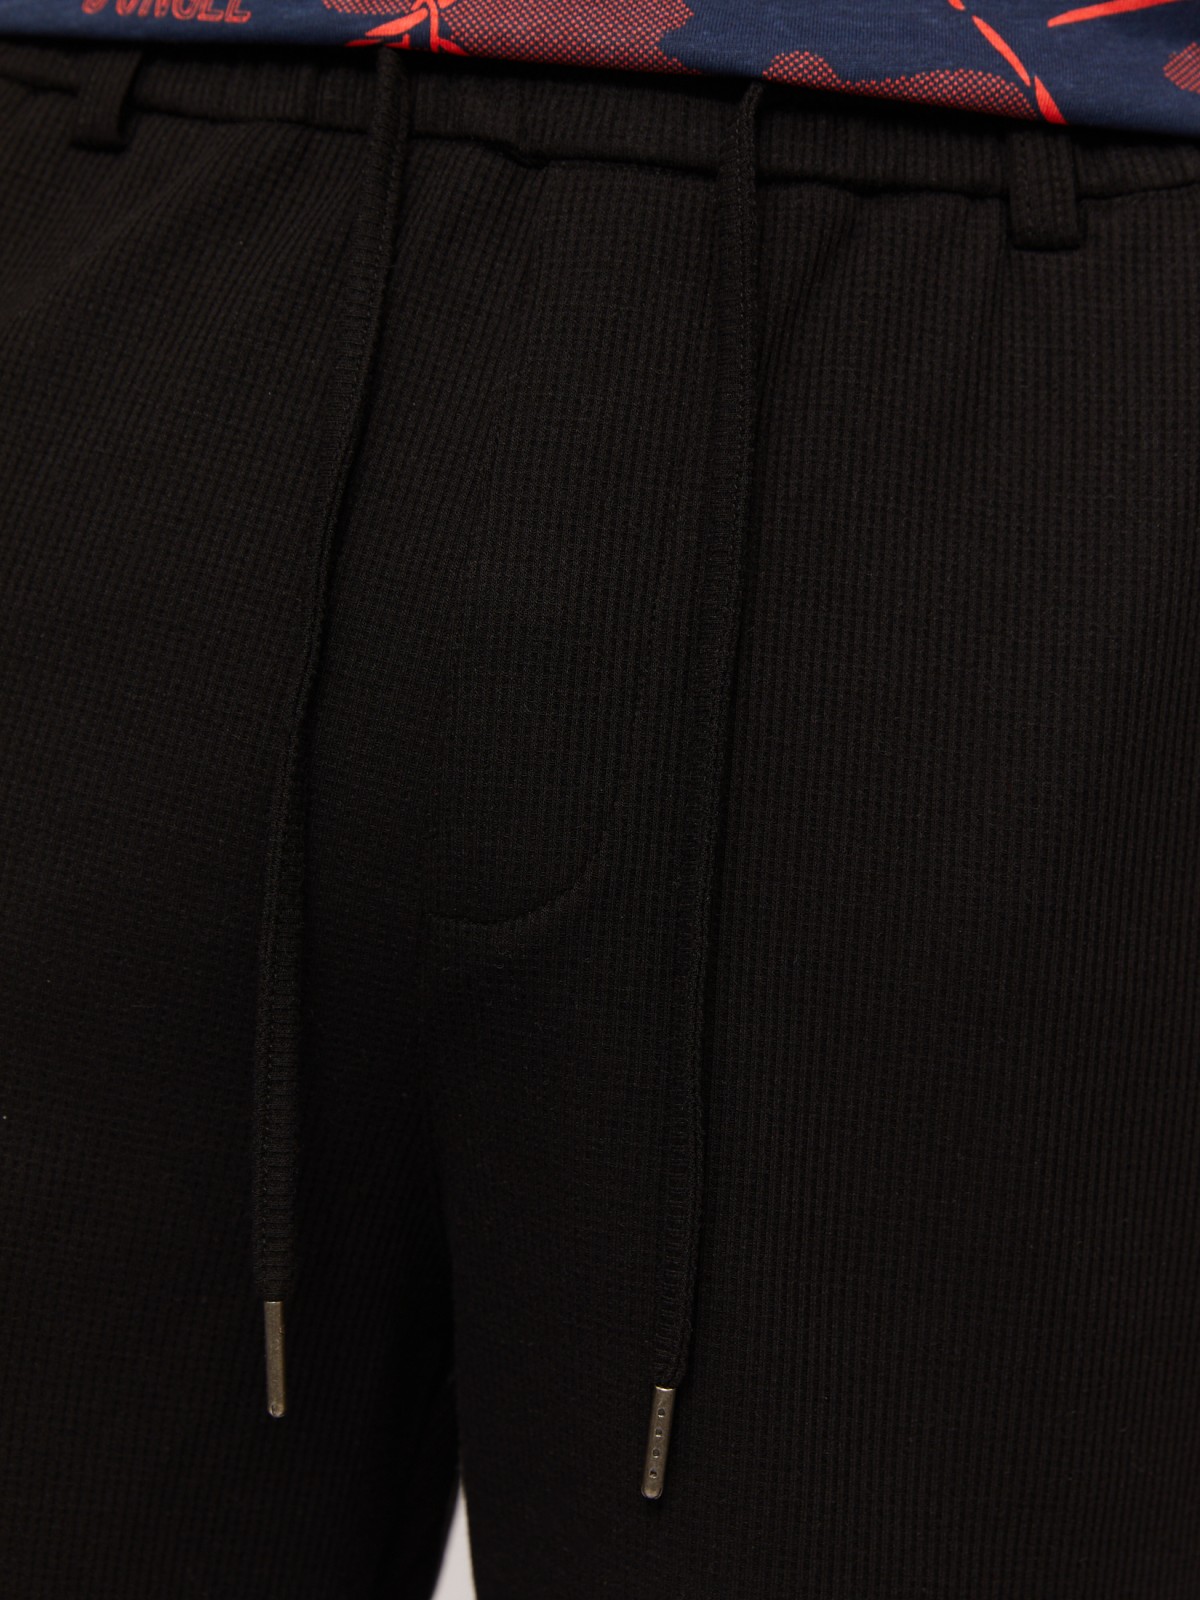 Трикотажные шорты на резинке zolla 014257J59021, цвет черный, размер S - фото 3